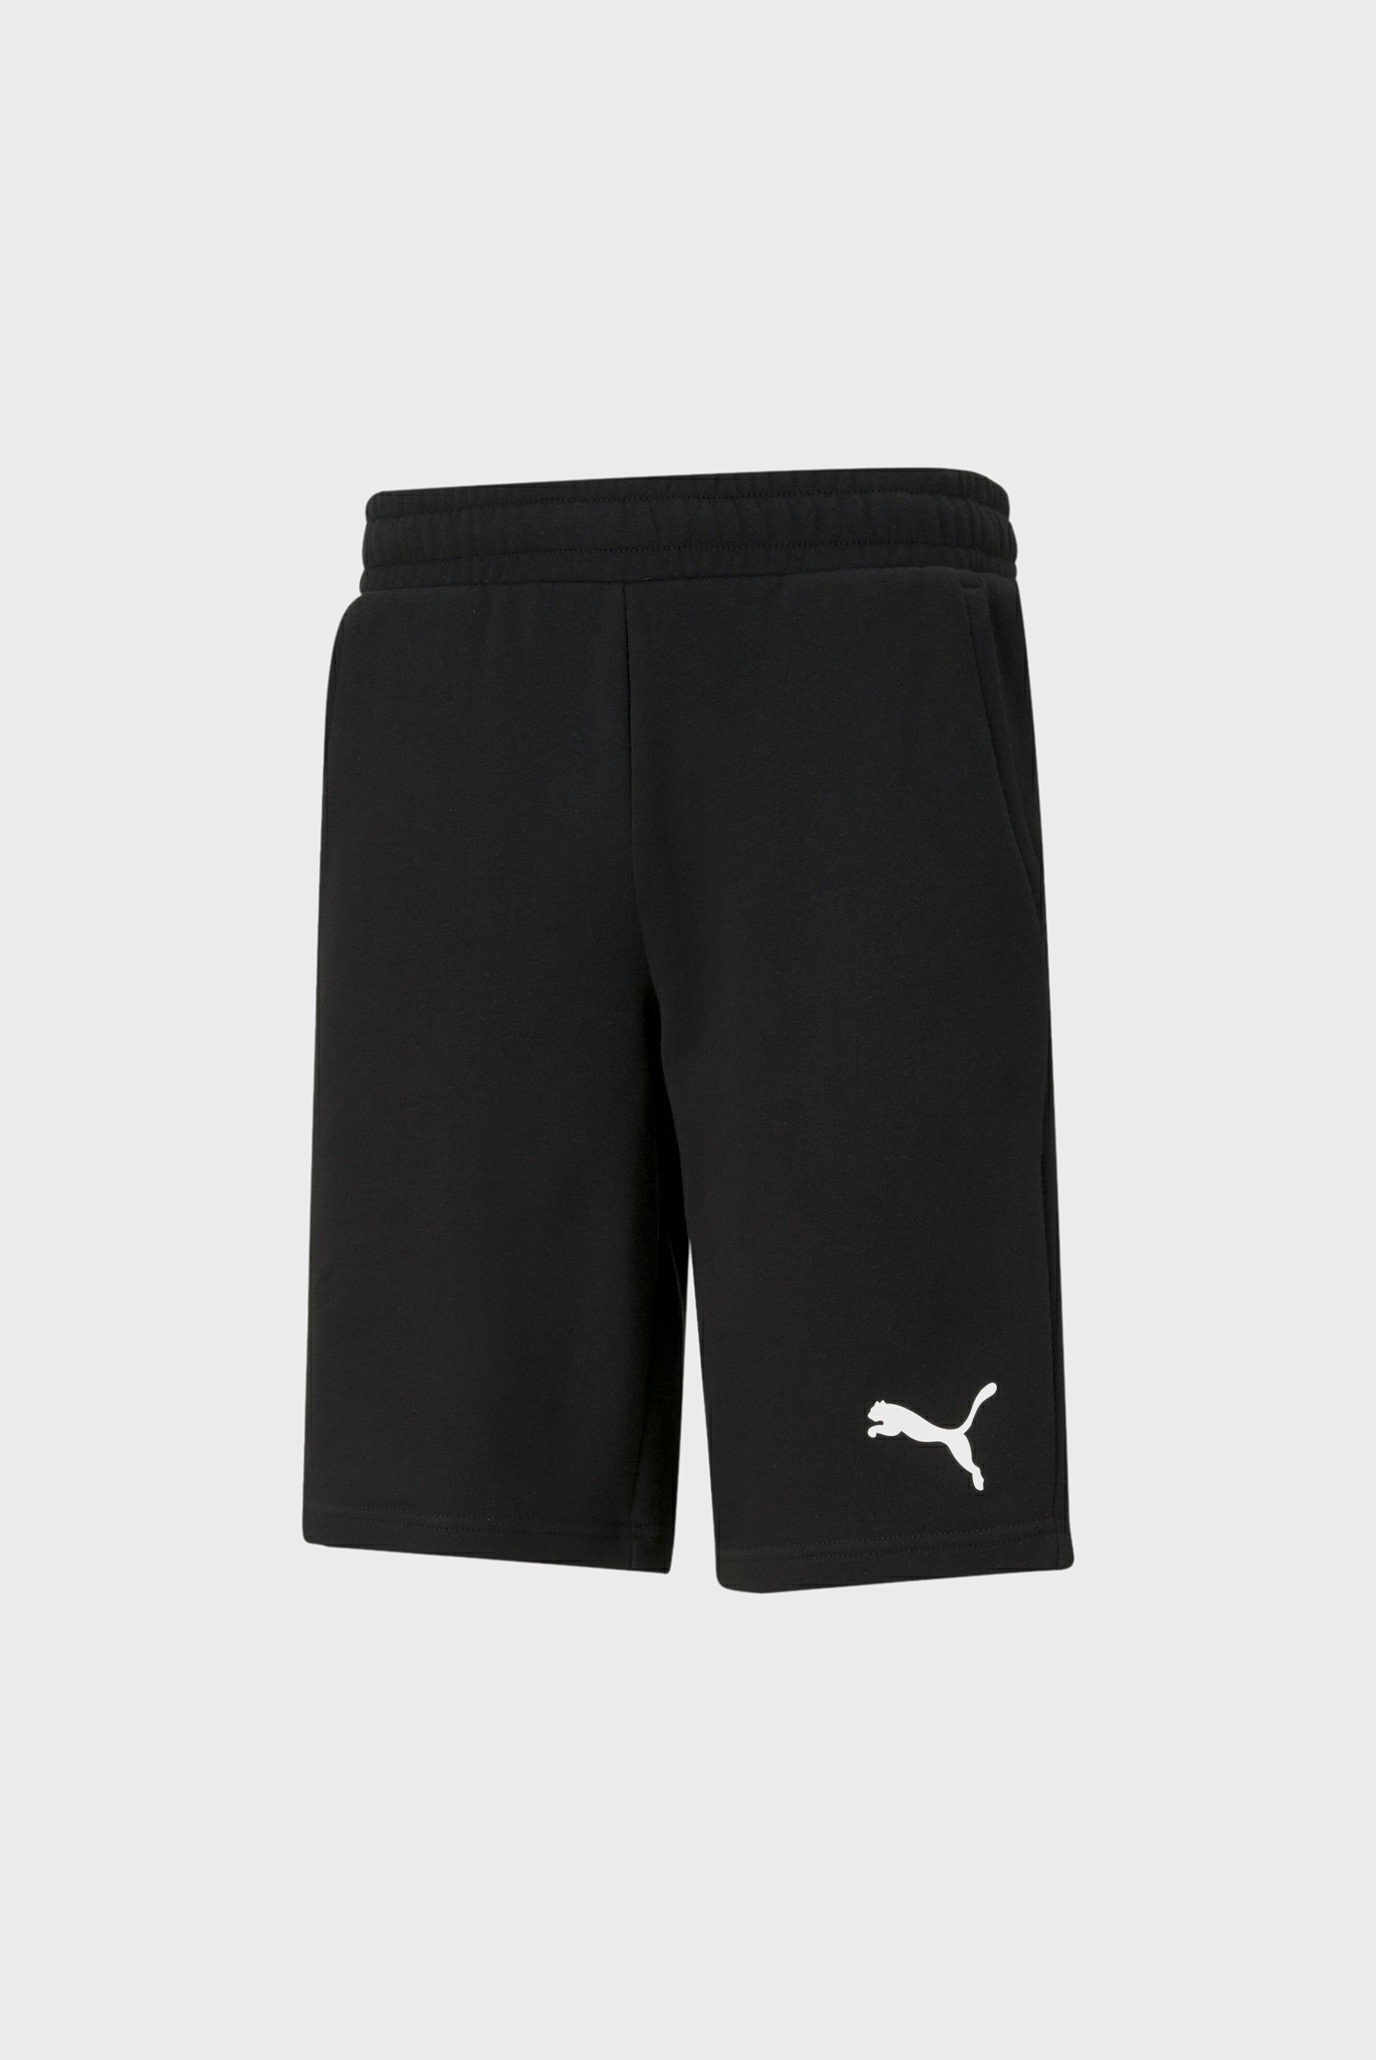 Мужские черные шорты Essentials Men's Shorts 1